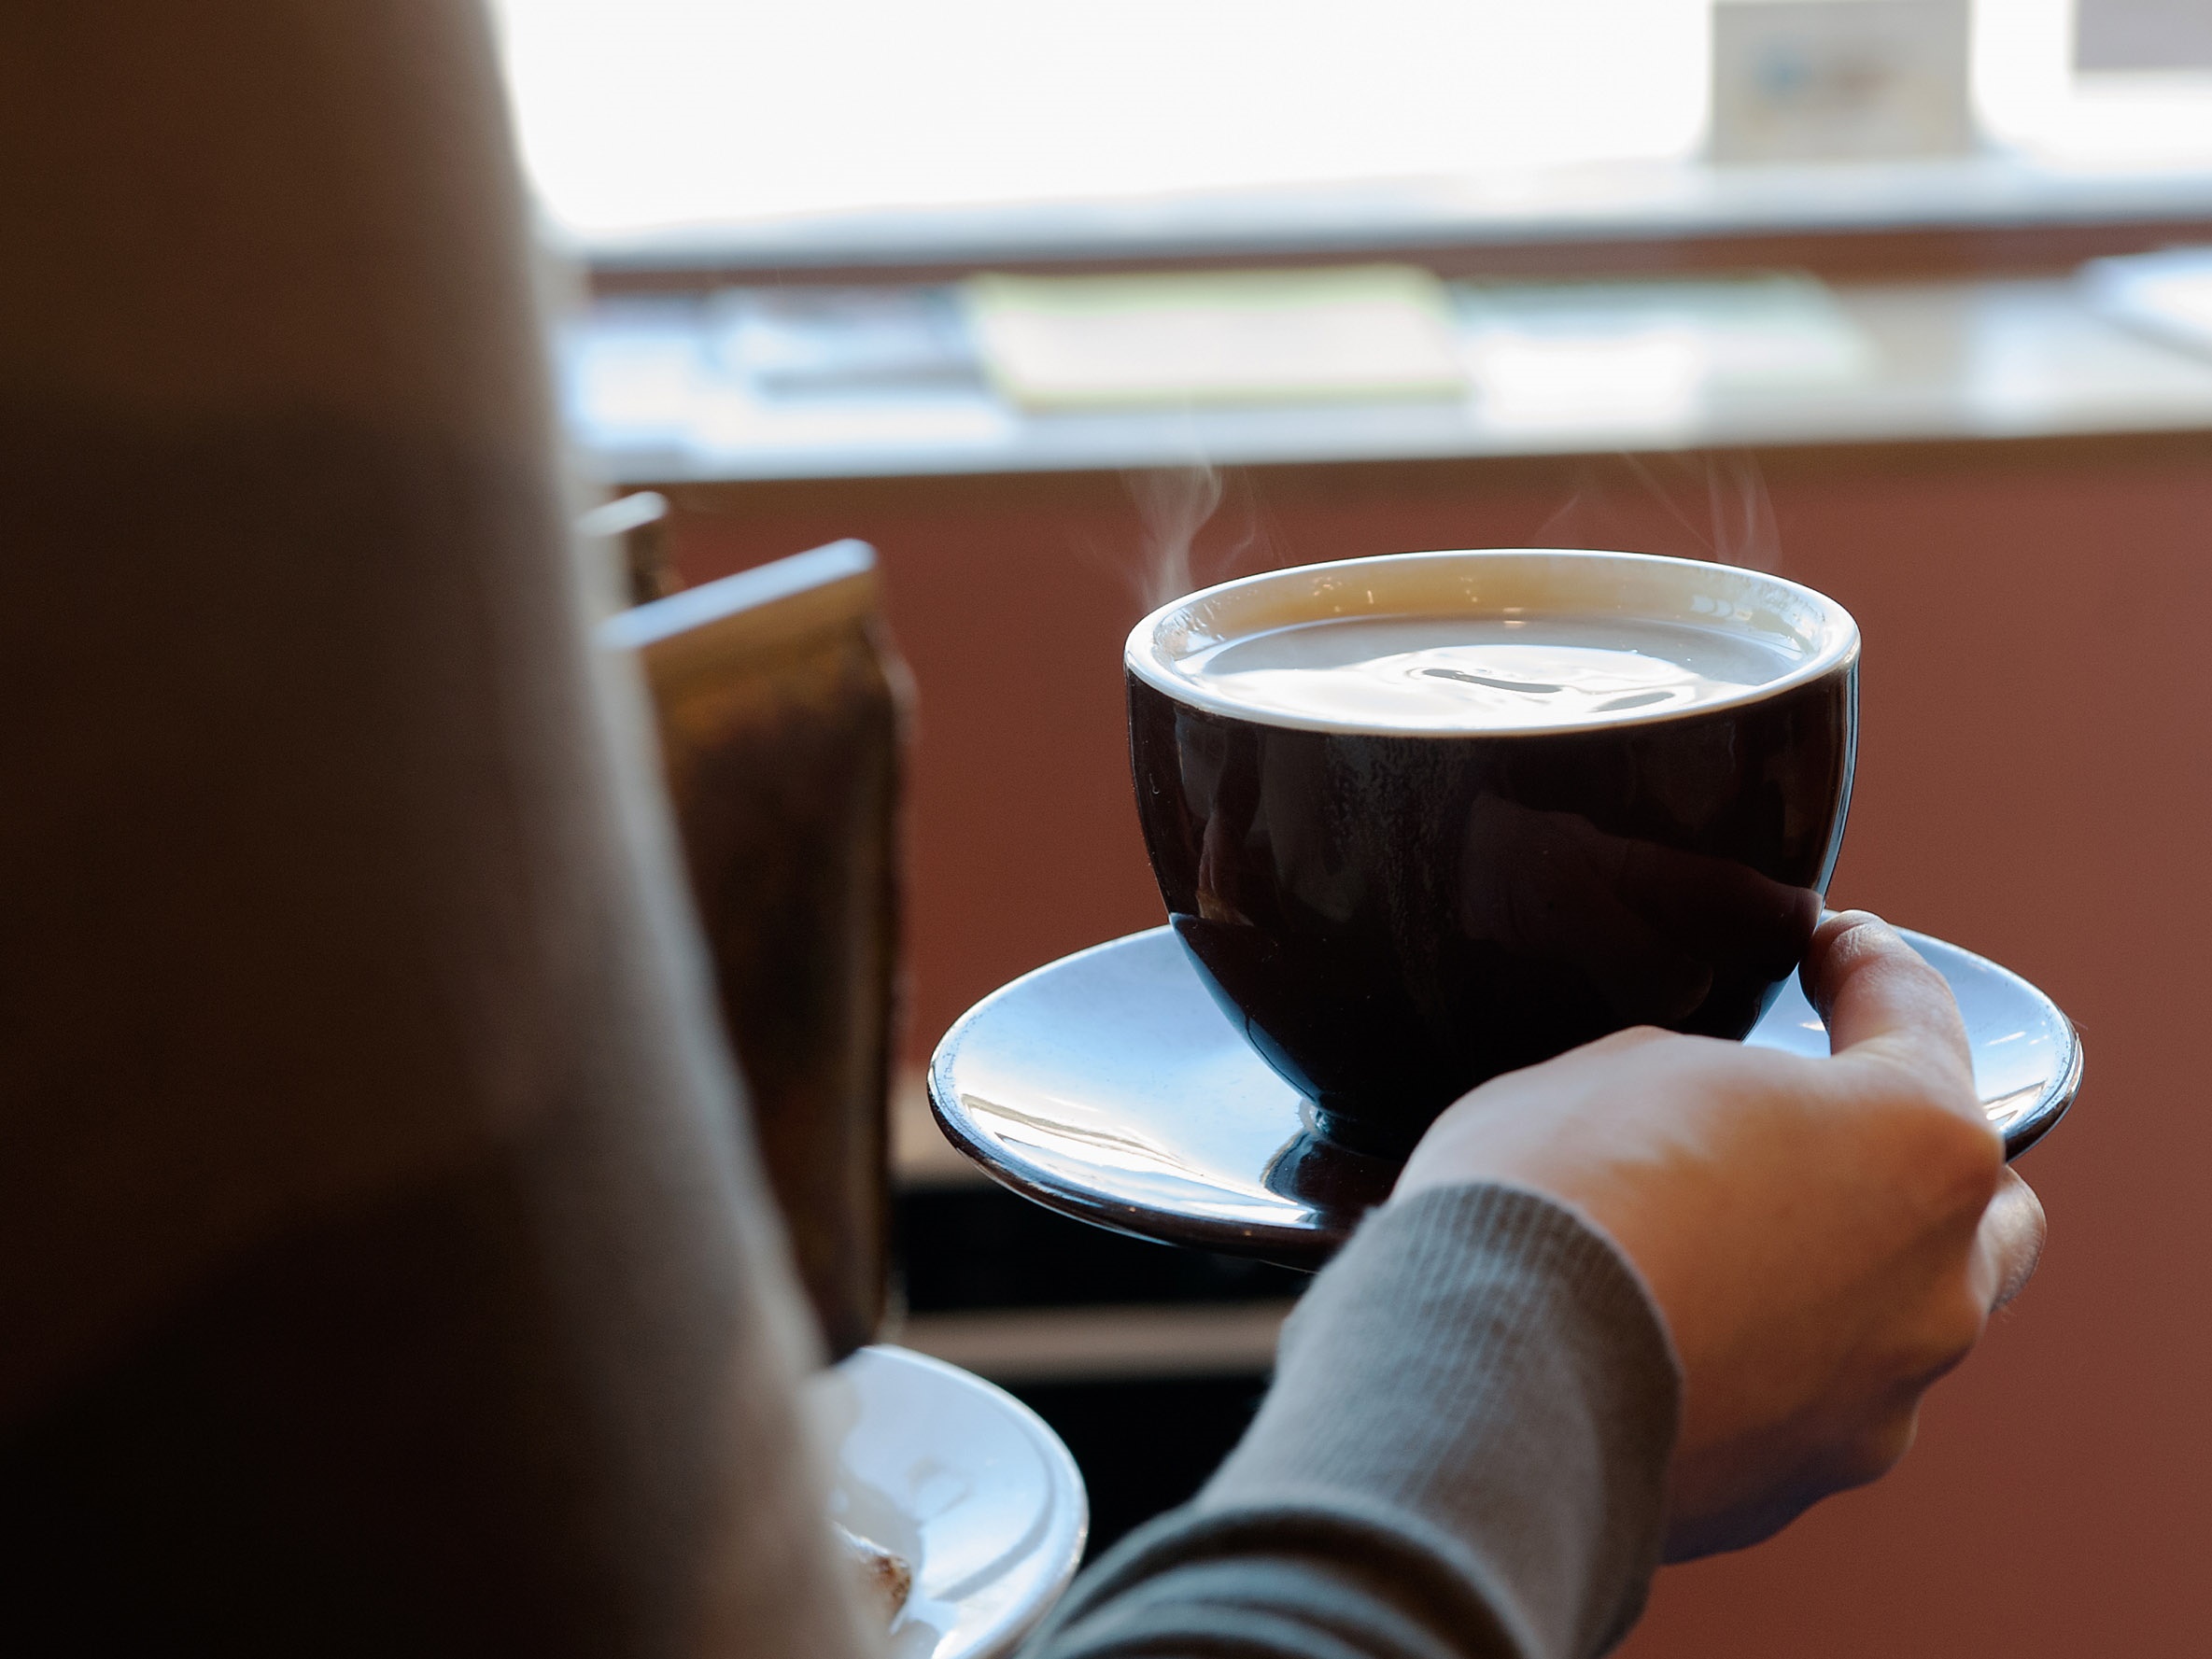 Para el bebedor de café, el ciclo del placer comienza incluso antes de que ingiera su primer sorbo. Comienza con la expectativa y la anticipación del evento
EUROPA ESPAÑA SOCIEDAD
BRYAN THOMAS
